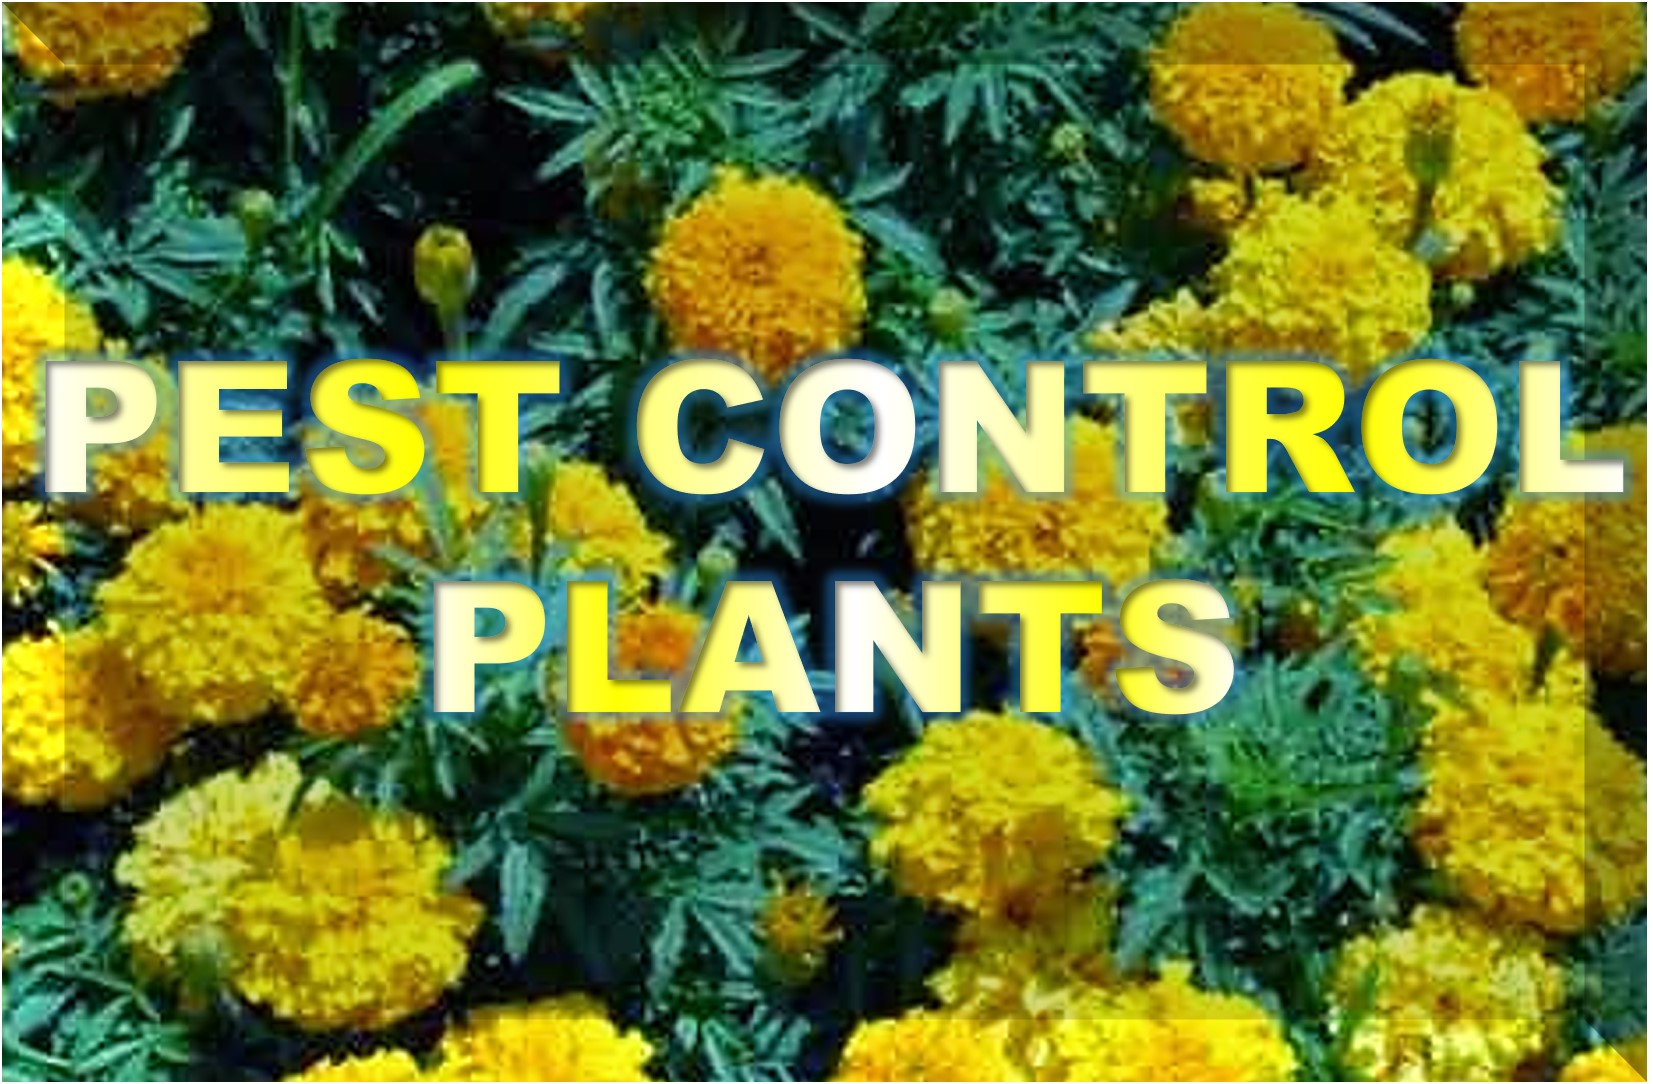 Pest Control Plants